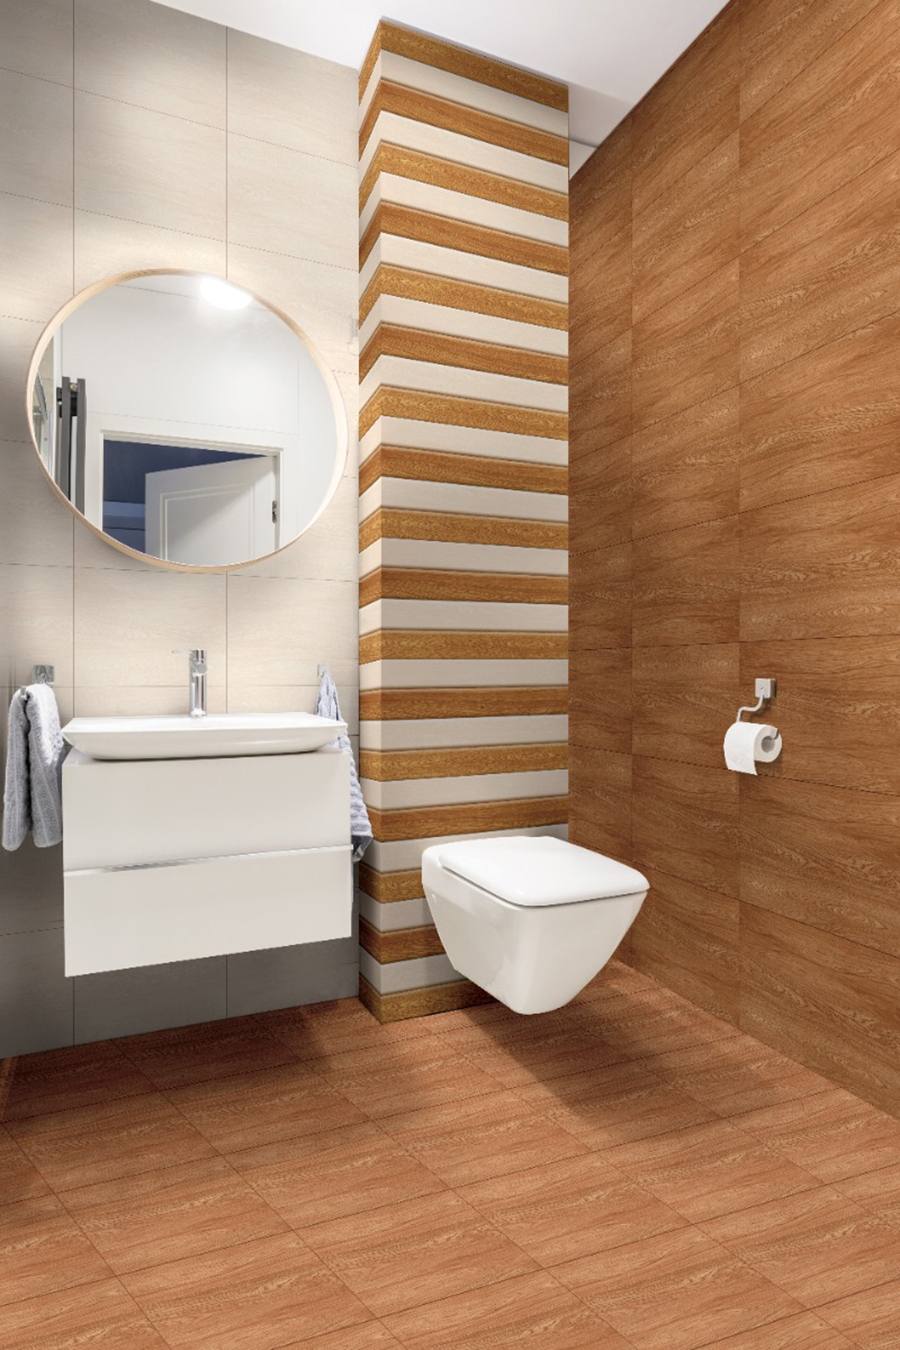 wood look bathroom tiles for wall and floor